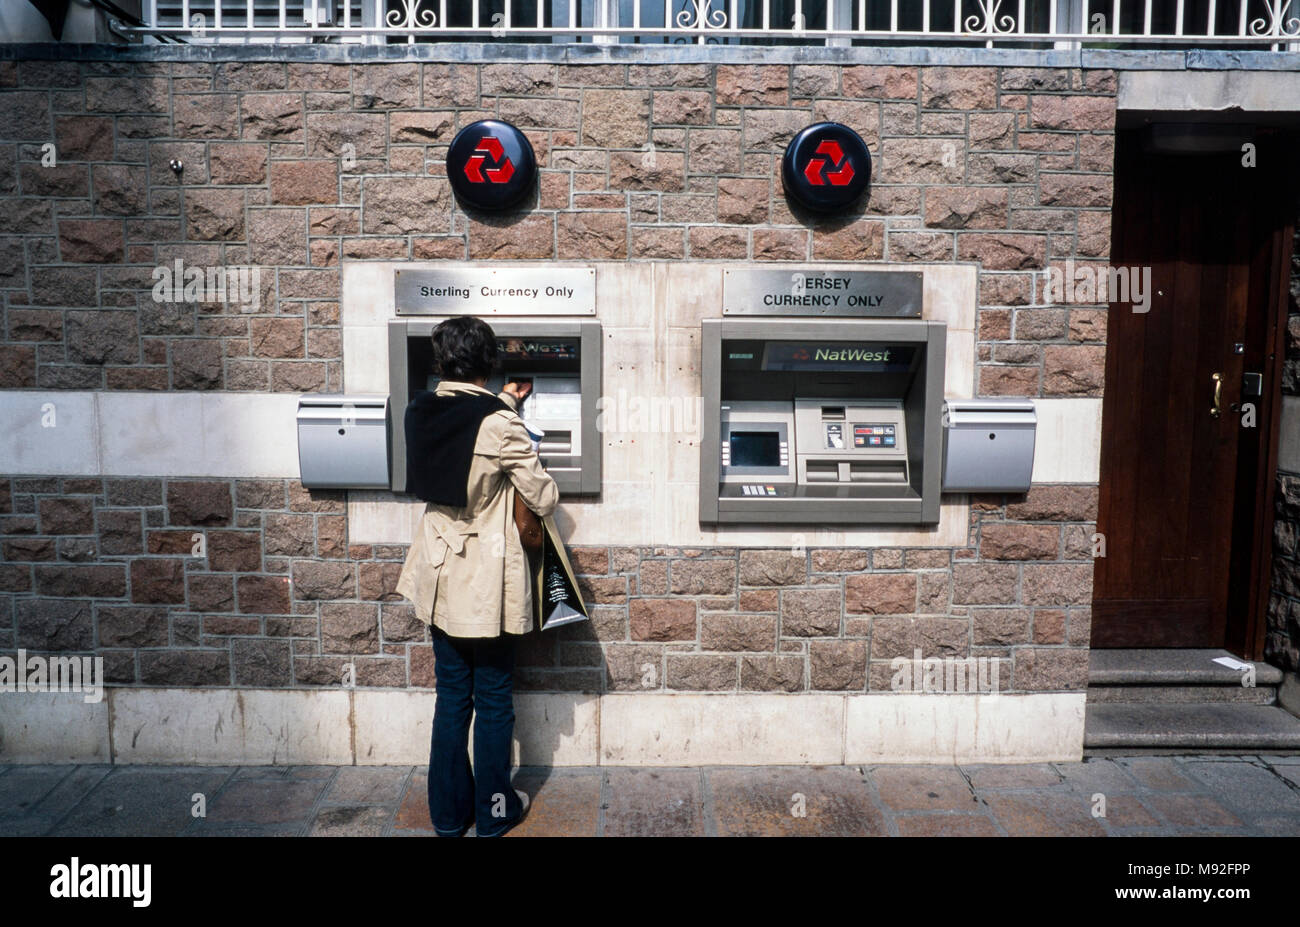 Distributeur automatique de la Banque Natwest, guichets automatiques, un issueing monnaie sterling uniquement, l'autre devise, Jersey St Helier, Jersey, Channel Islands Banque D'Images